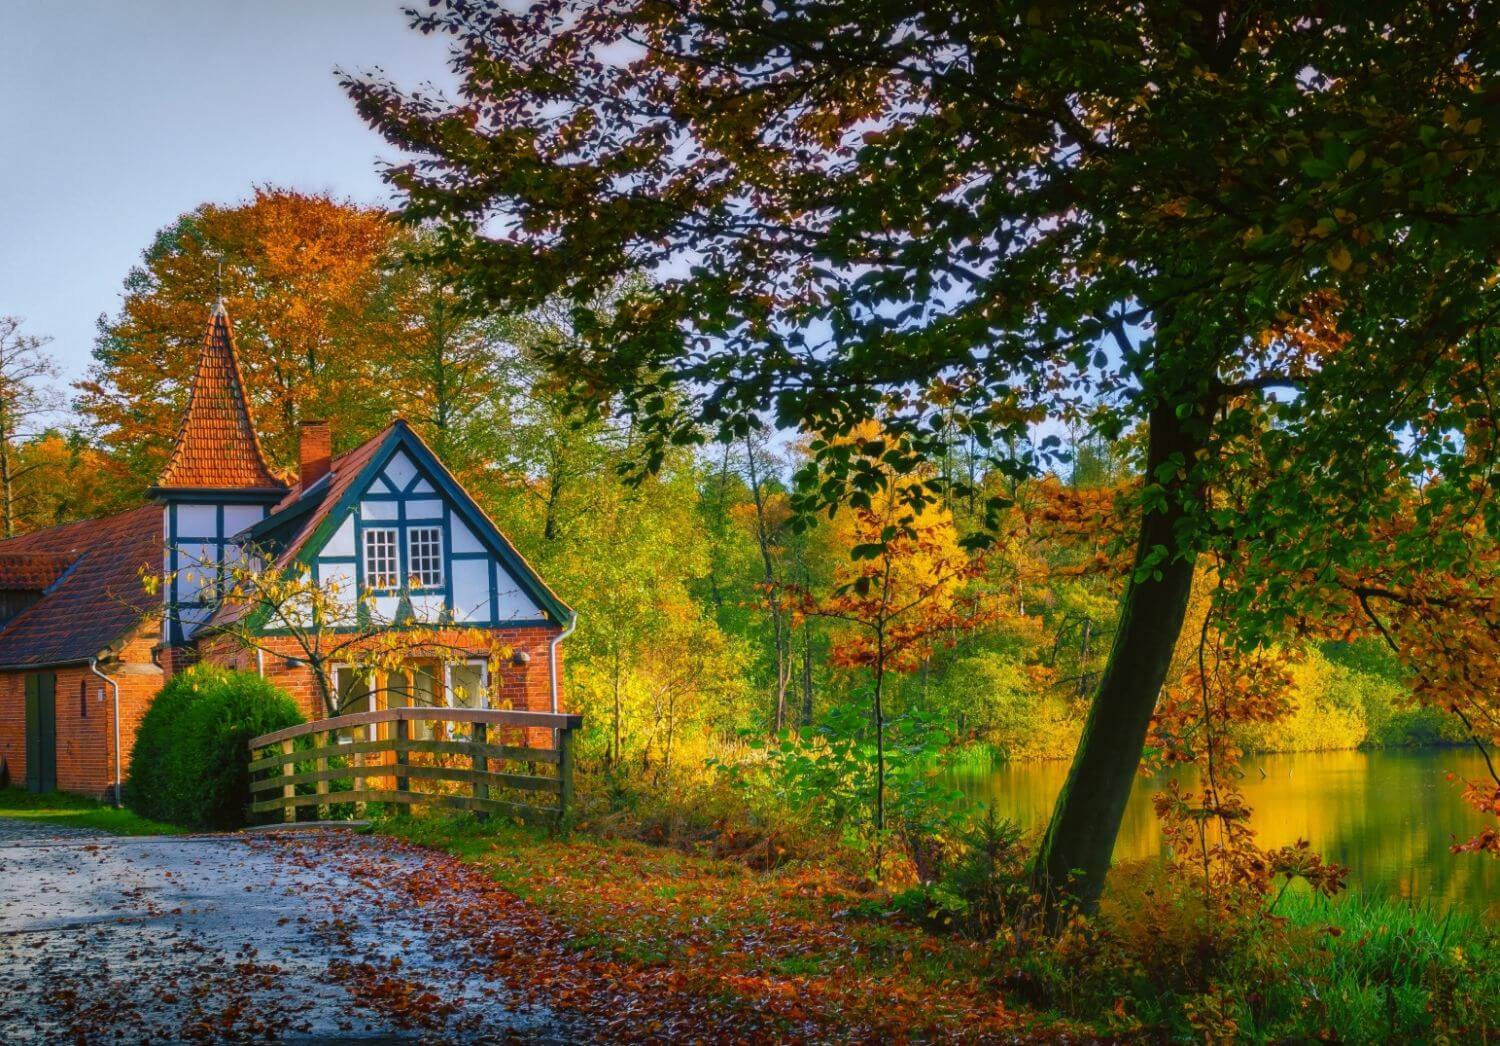 Осенний домик